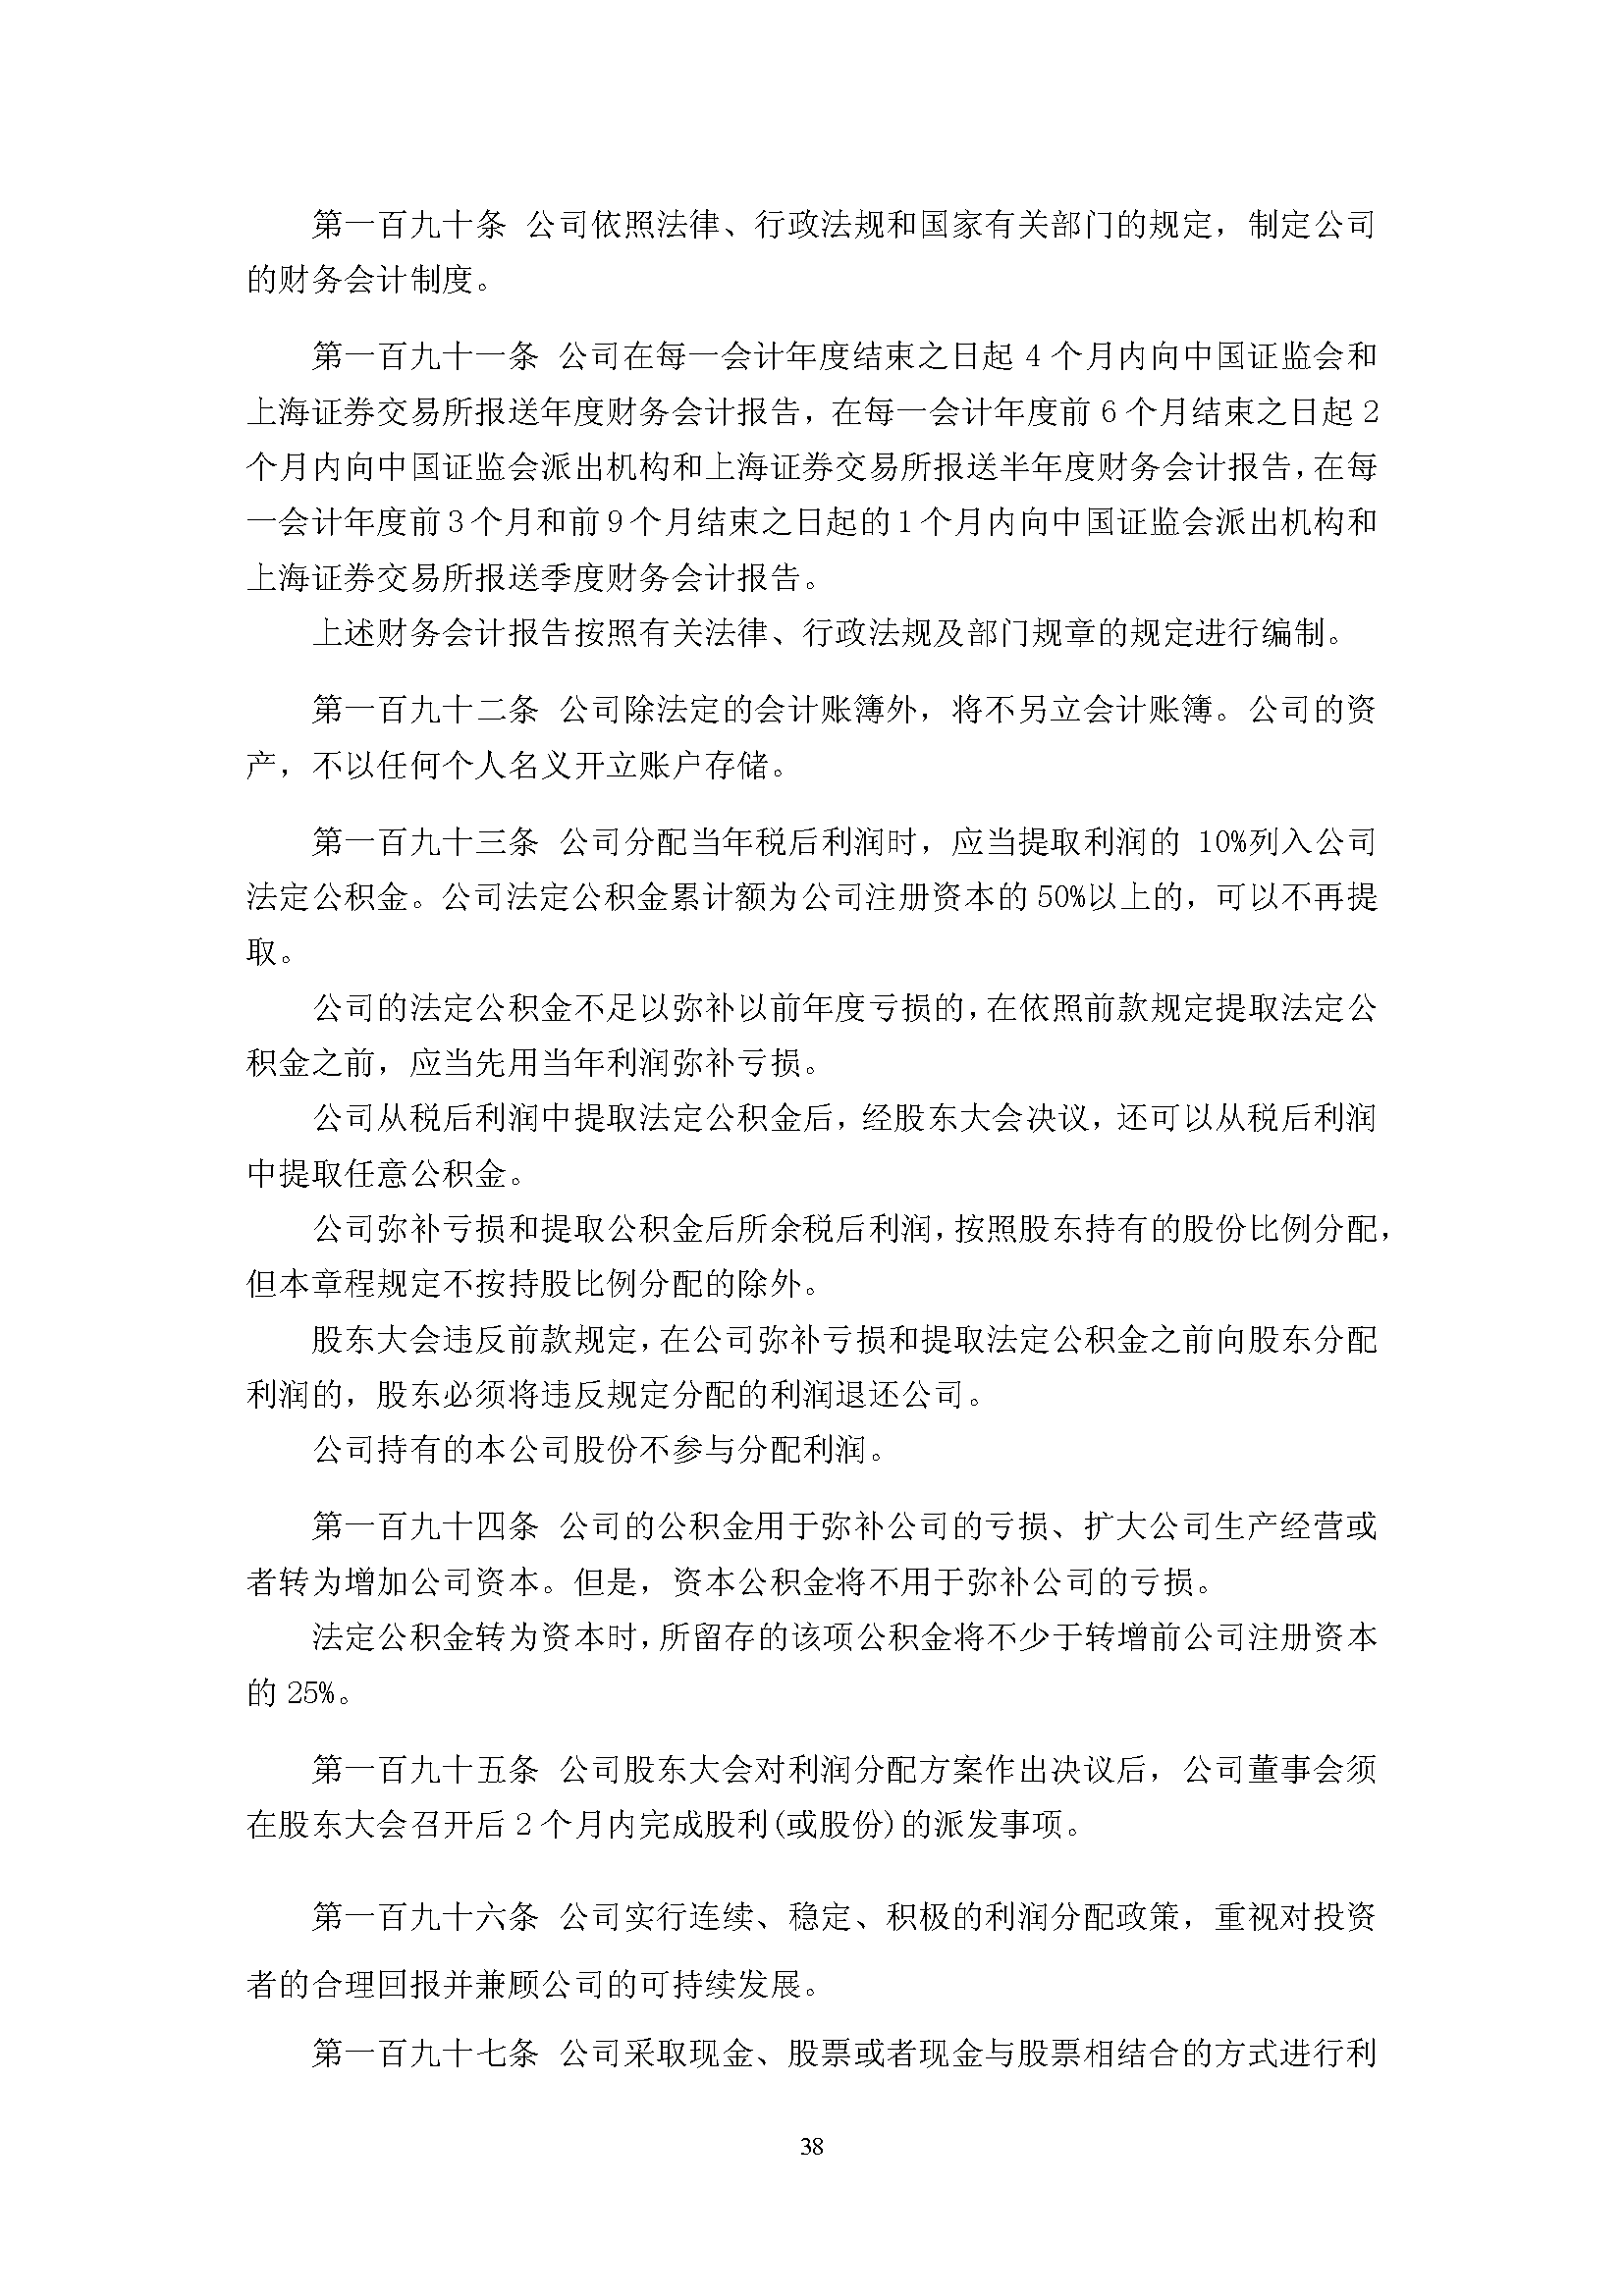 宜华生活公司章程(2019-5-31)_页面_38.png